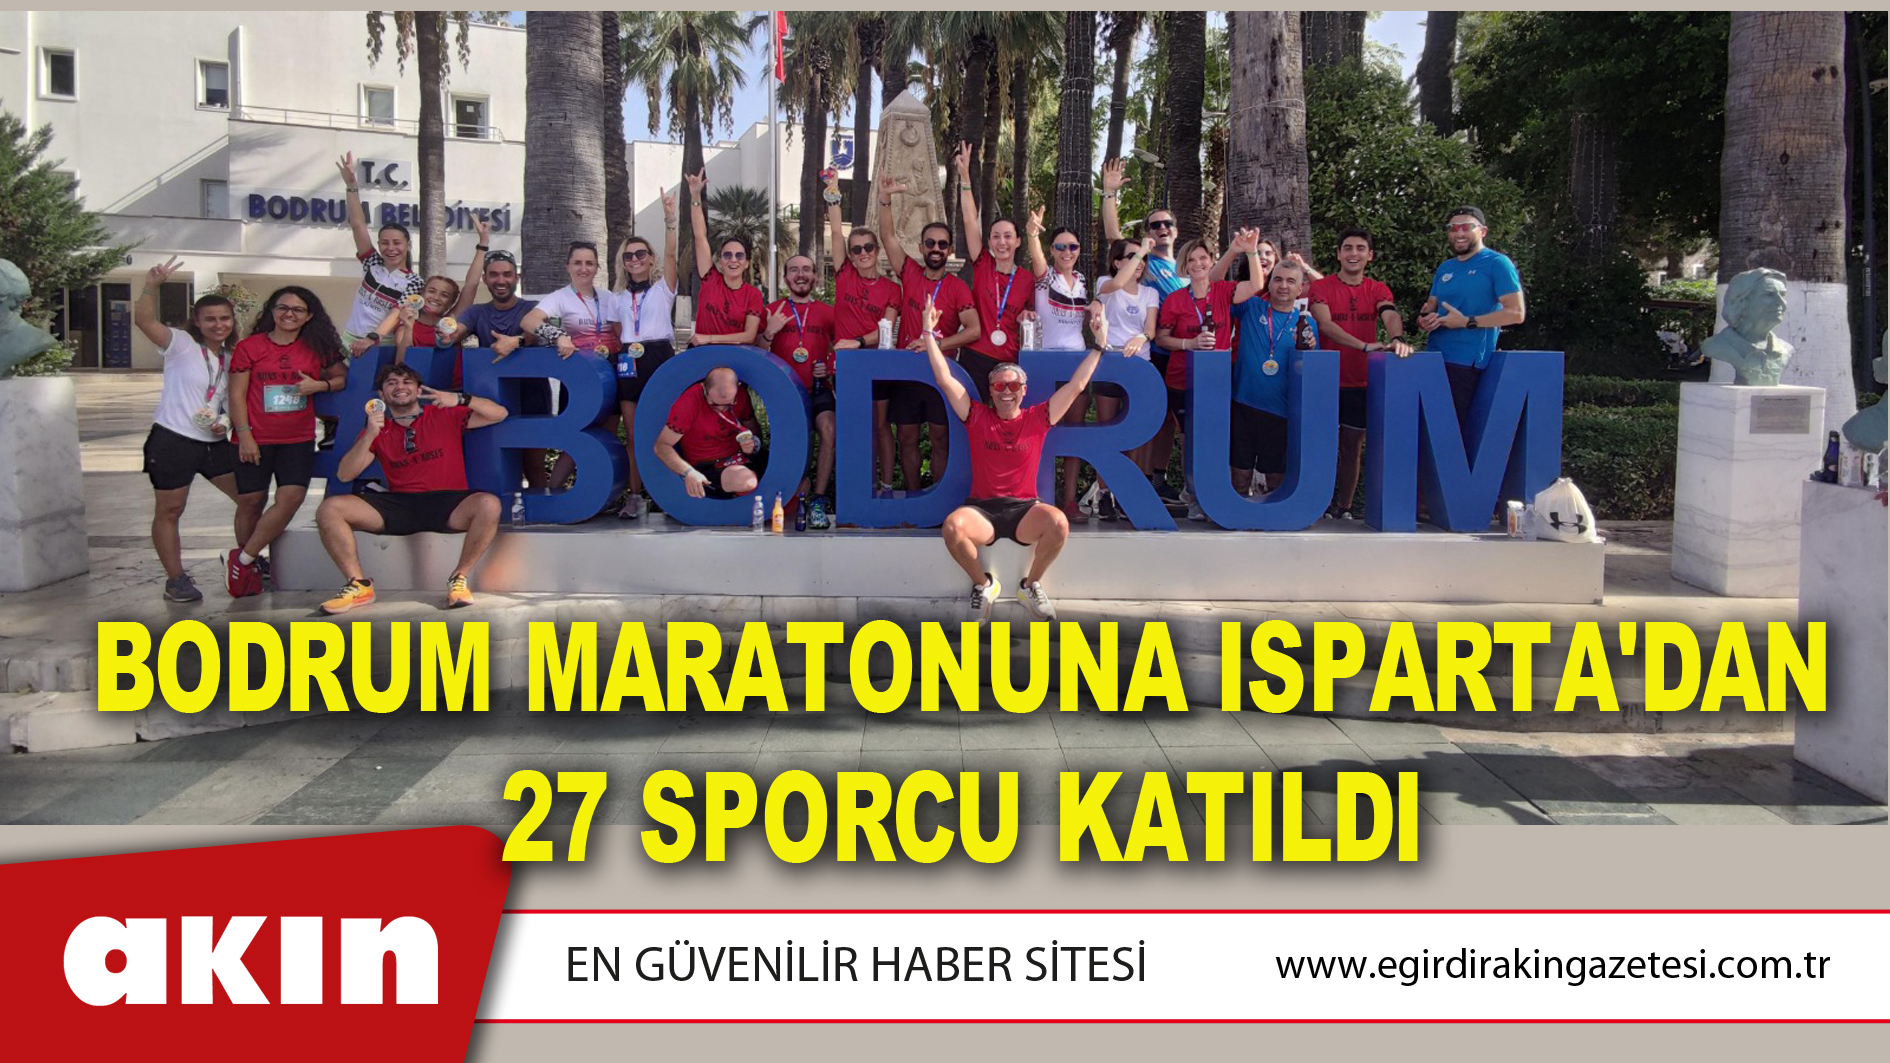 eğirdir haber,akın gazetesi,egirdir haberler,son dakika,Bodrum Maratonuna Isparta'dan 27 Sporcu Katıldı